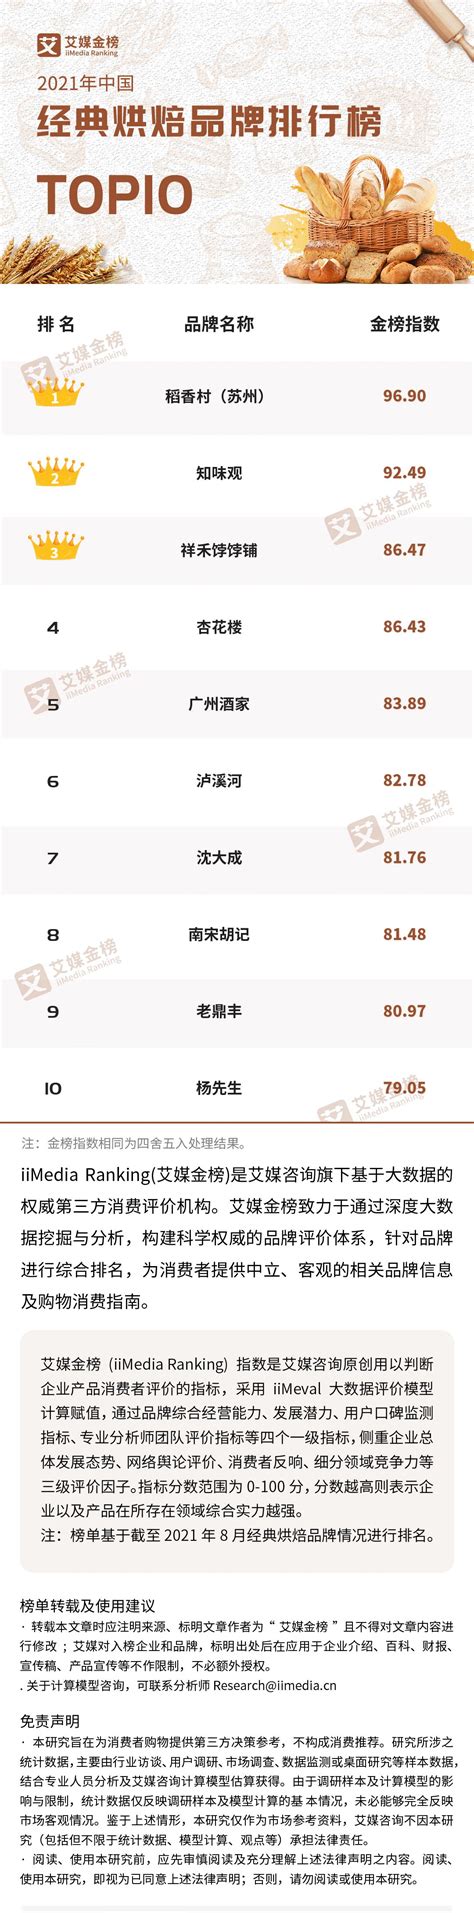 2021年中国经典烘焙品牌排行榜Top10 - 唐山味儿